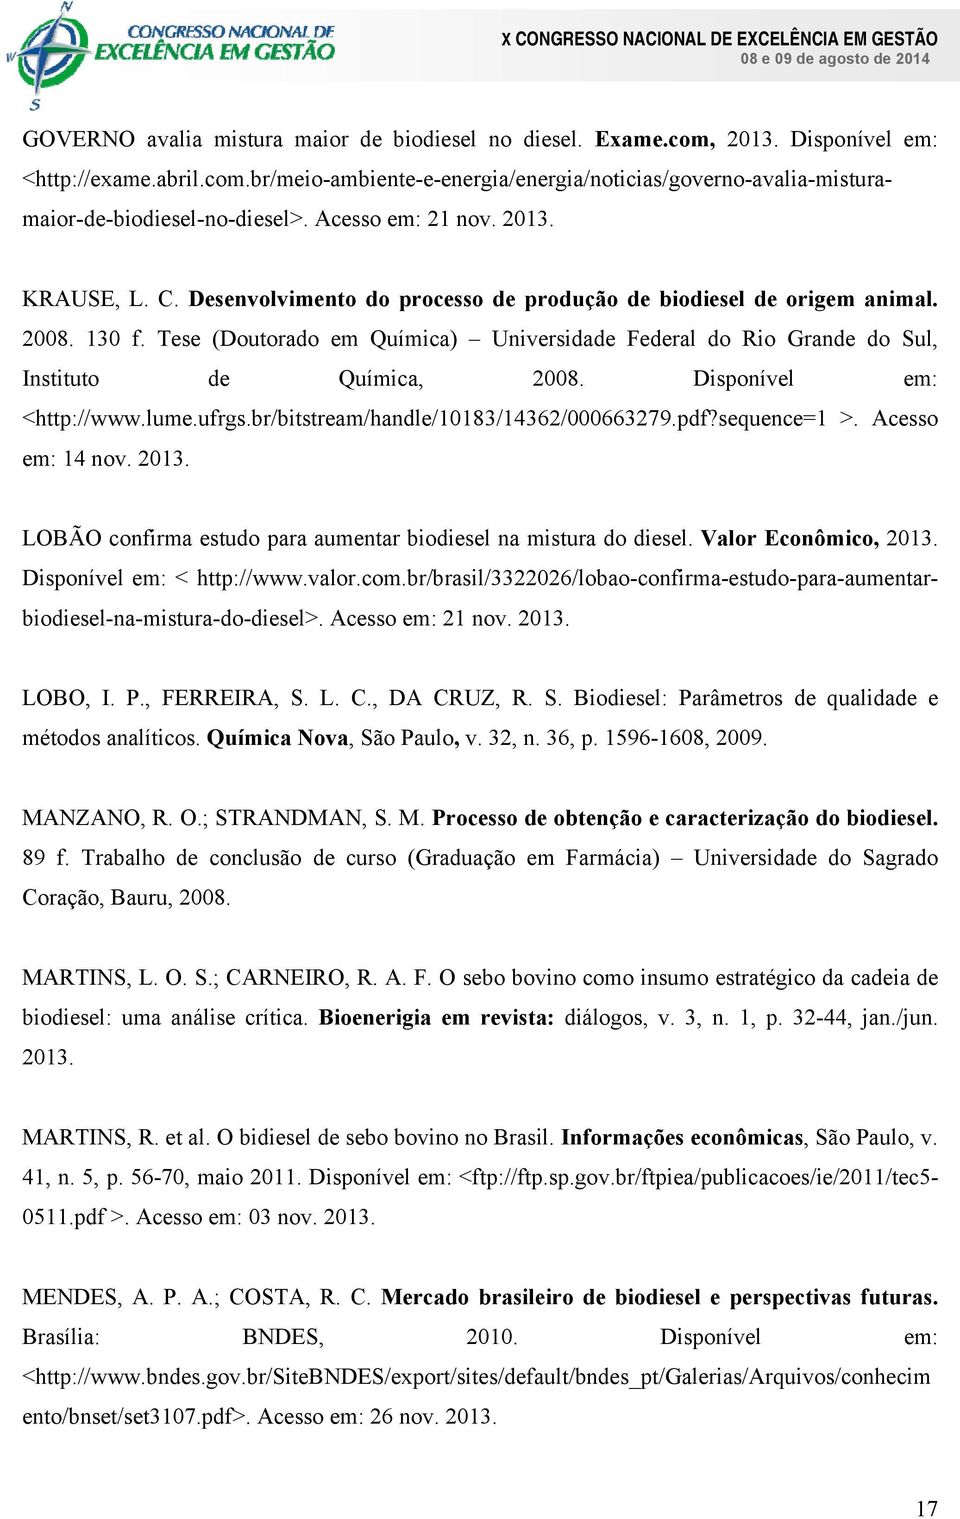 Tese (Doutorado em Química) Universidade Federal do Rio Grande do Sul, Instituto de Química, 2008. Disponível em: <http://www.lume.ufrgs.br/bitstream/handle/10183/14362/000663279.pdf?sequence=1 >.